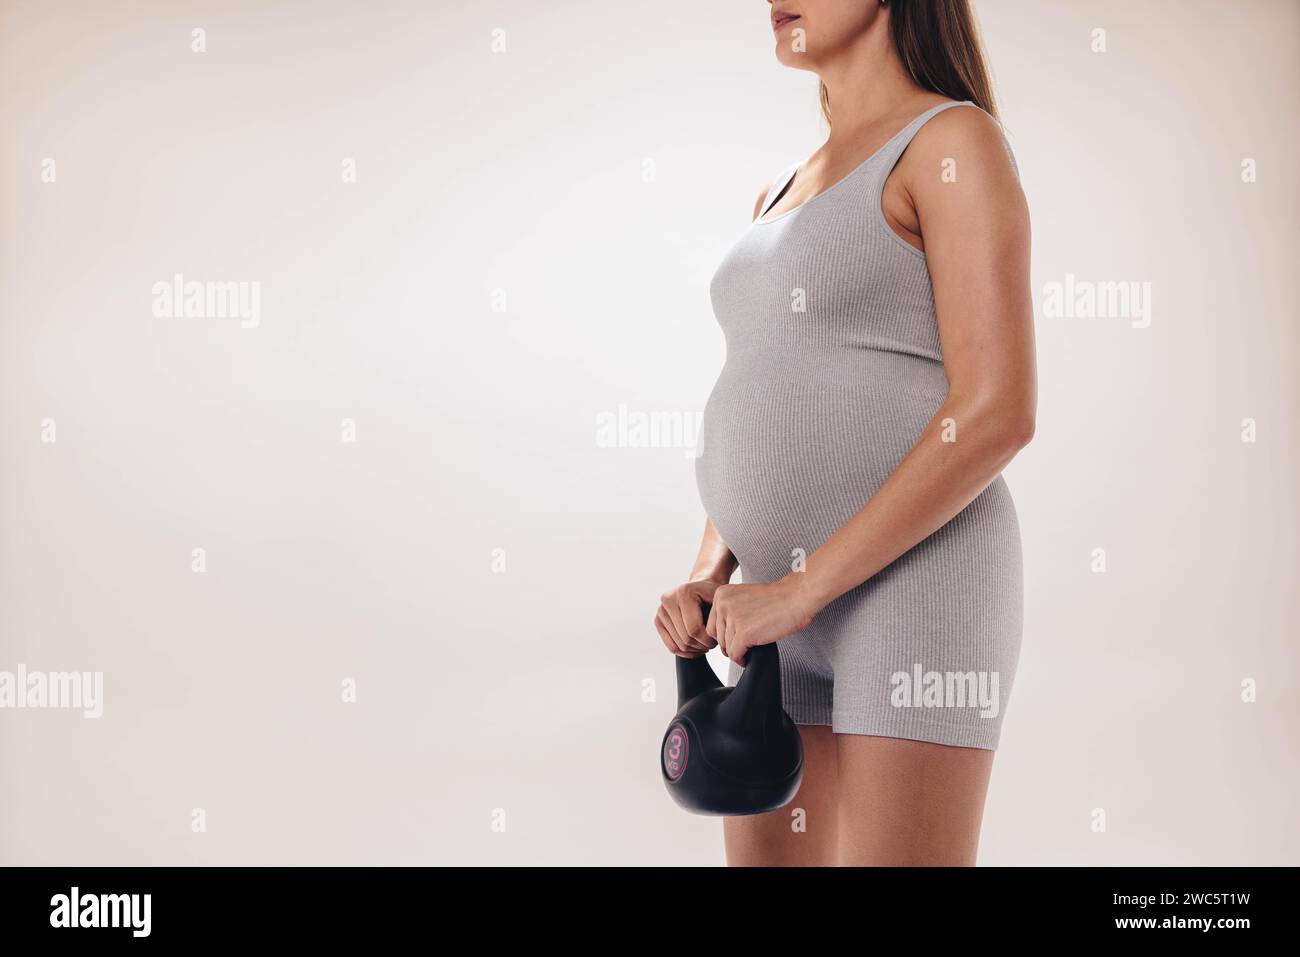 Frau mit einem Baby Unebenheit übt Krafttraining und Gewichtheben für einen gesunden Körper während der Schwangerschaft. Sie trägt Fitnesskleidung und hält einen Dummkopf Stockfoto